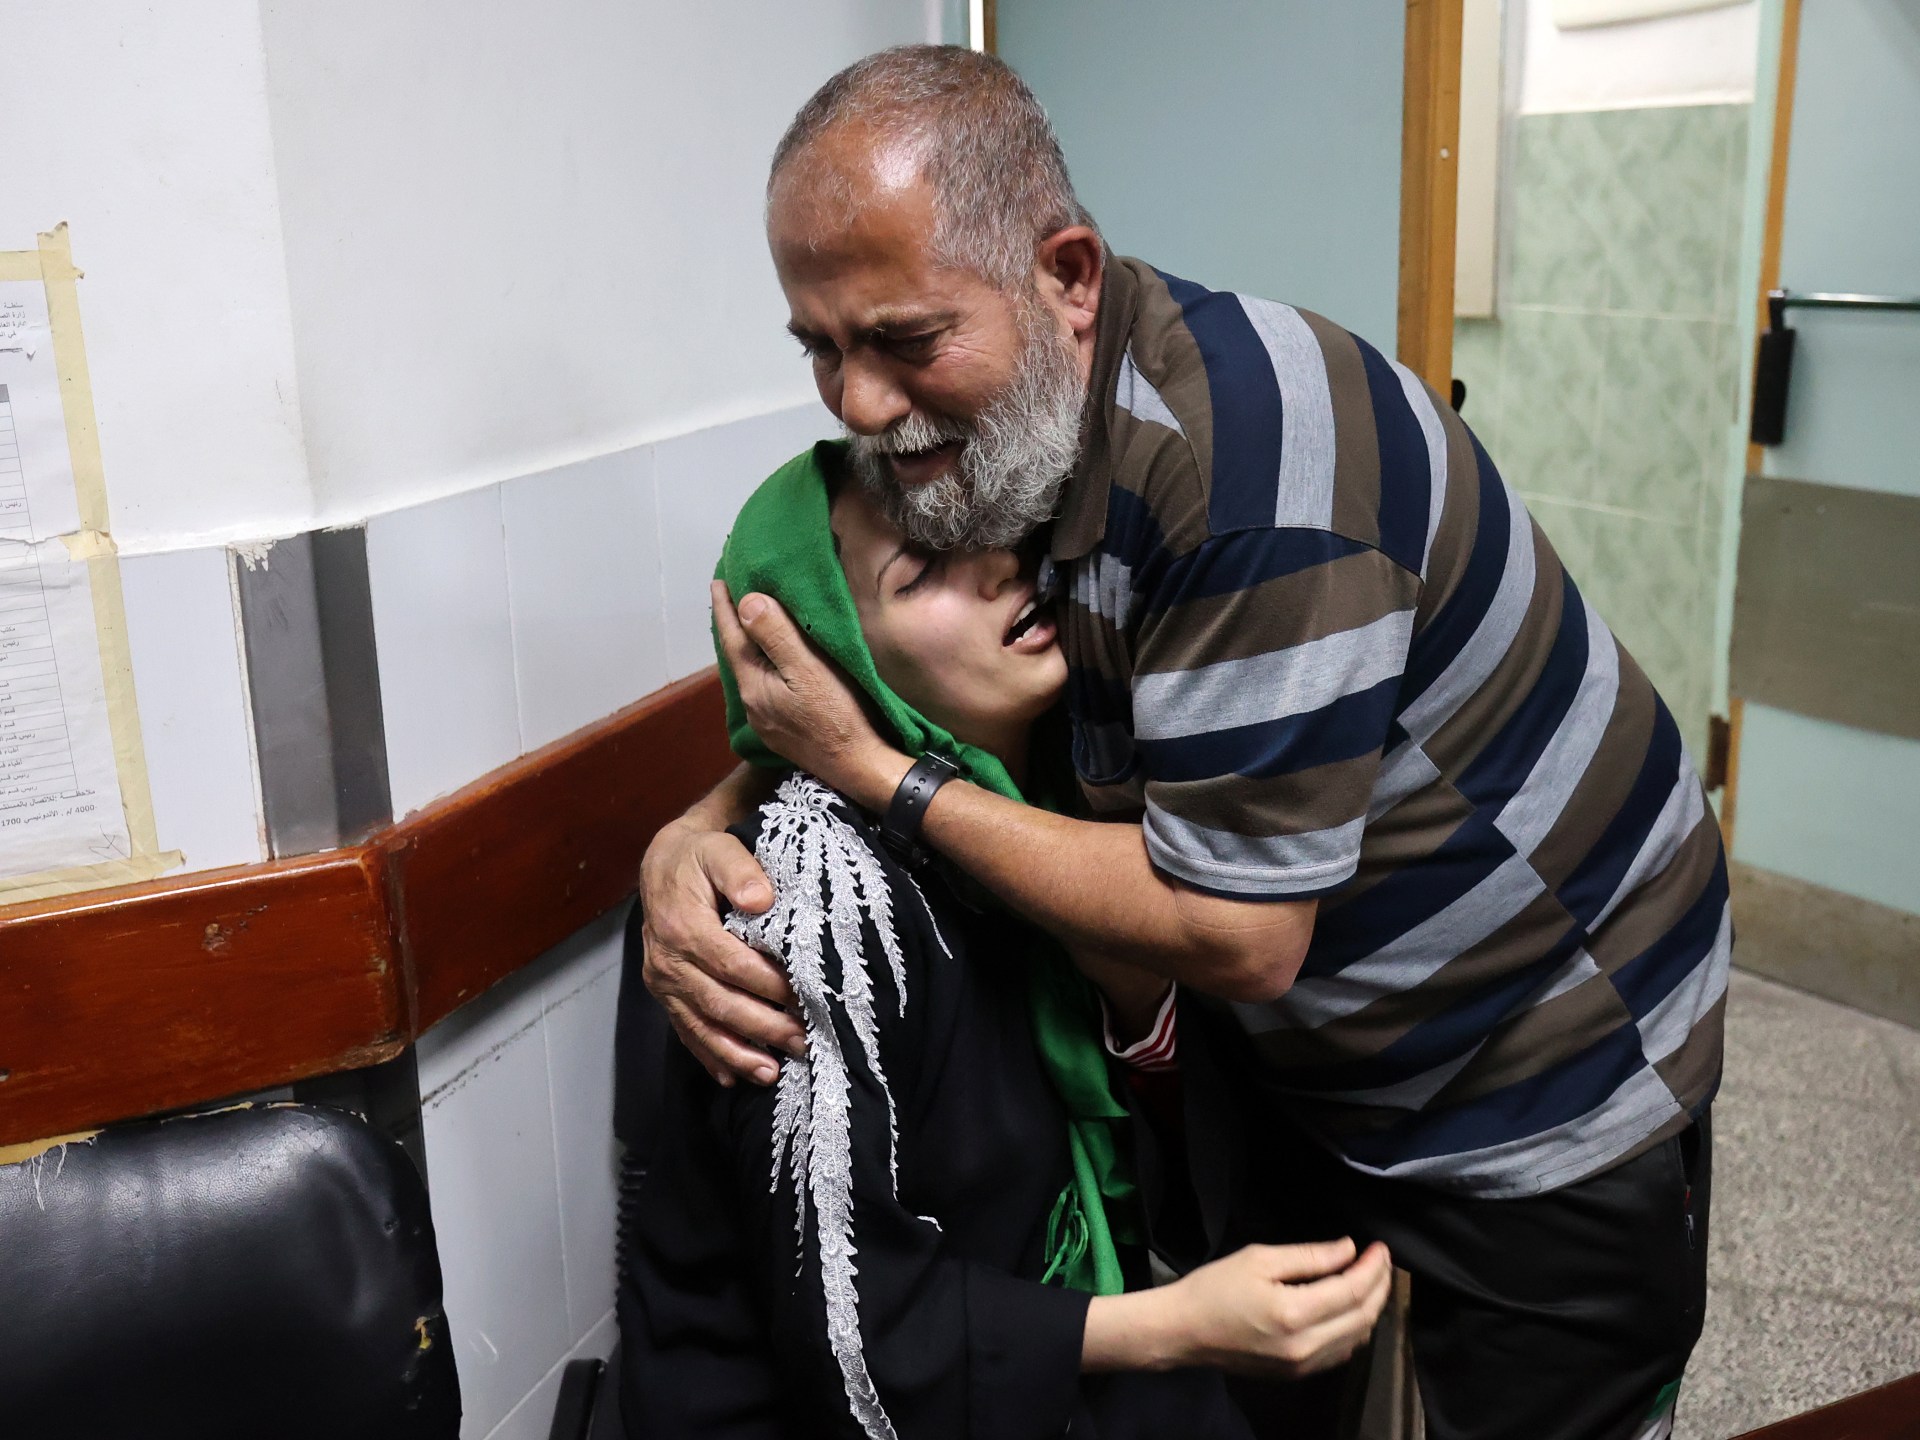 Media Barat dikritik karena mengabaikan kematian anak Palestina |  Berita konflik Israel-Palestina